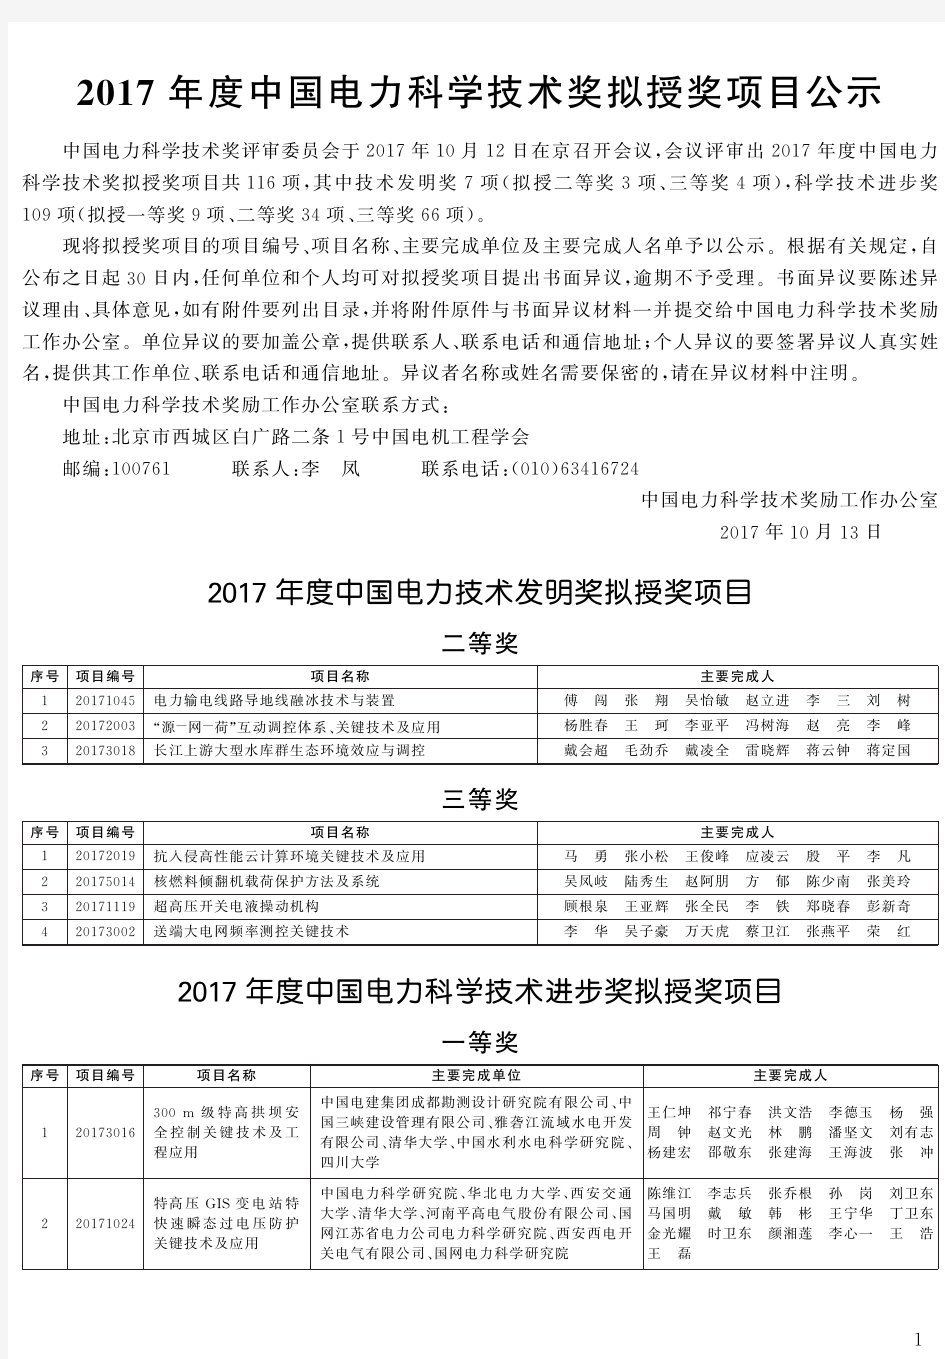 中国电机工程学会 2017年度中国电力科学技术奖拟授奖项目公示